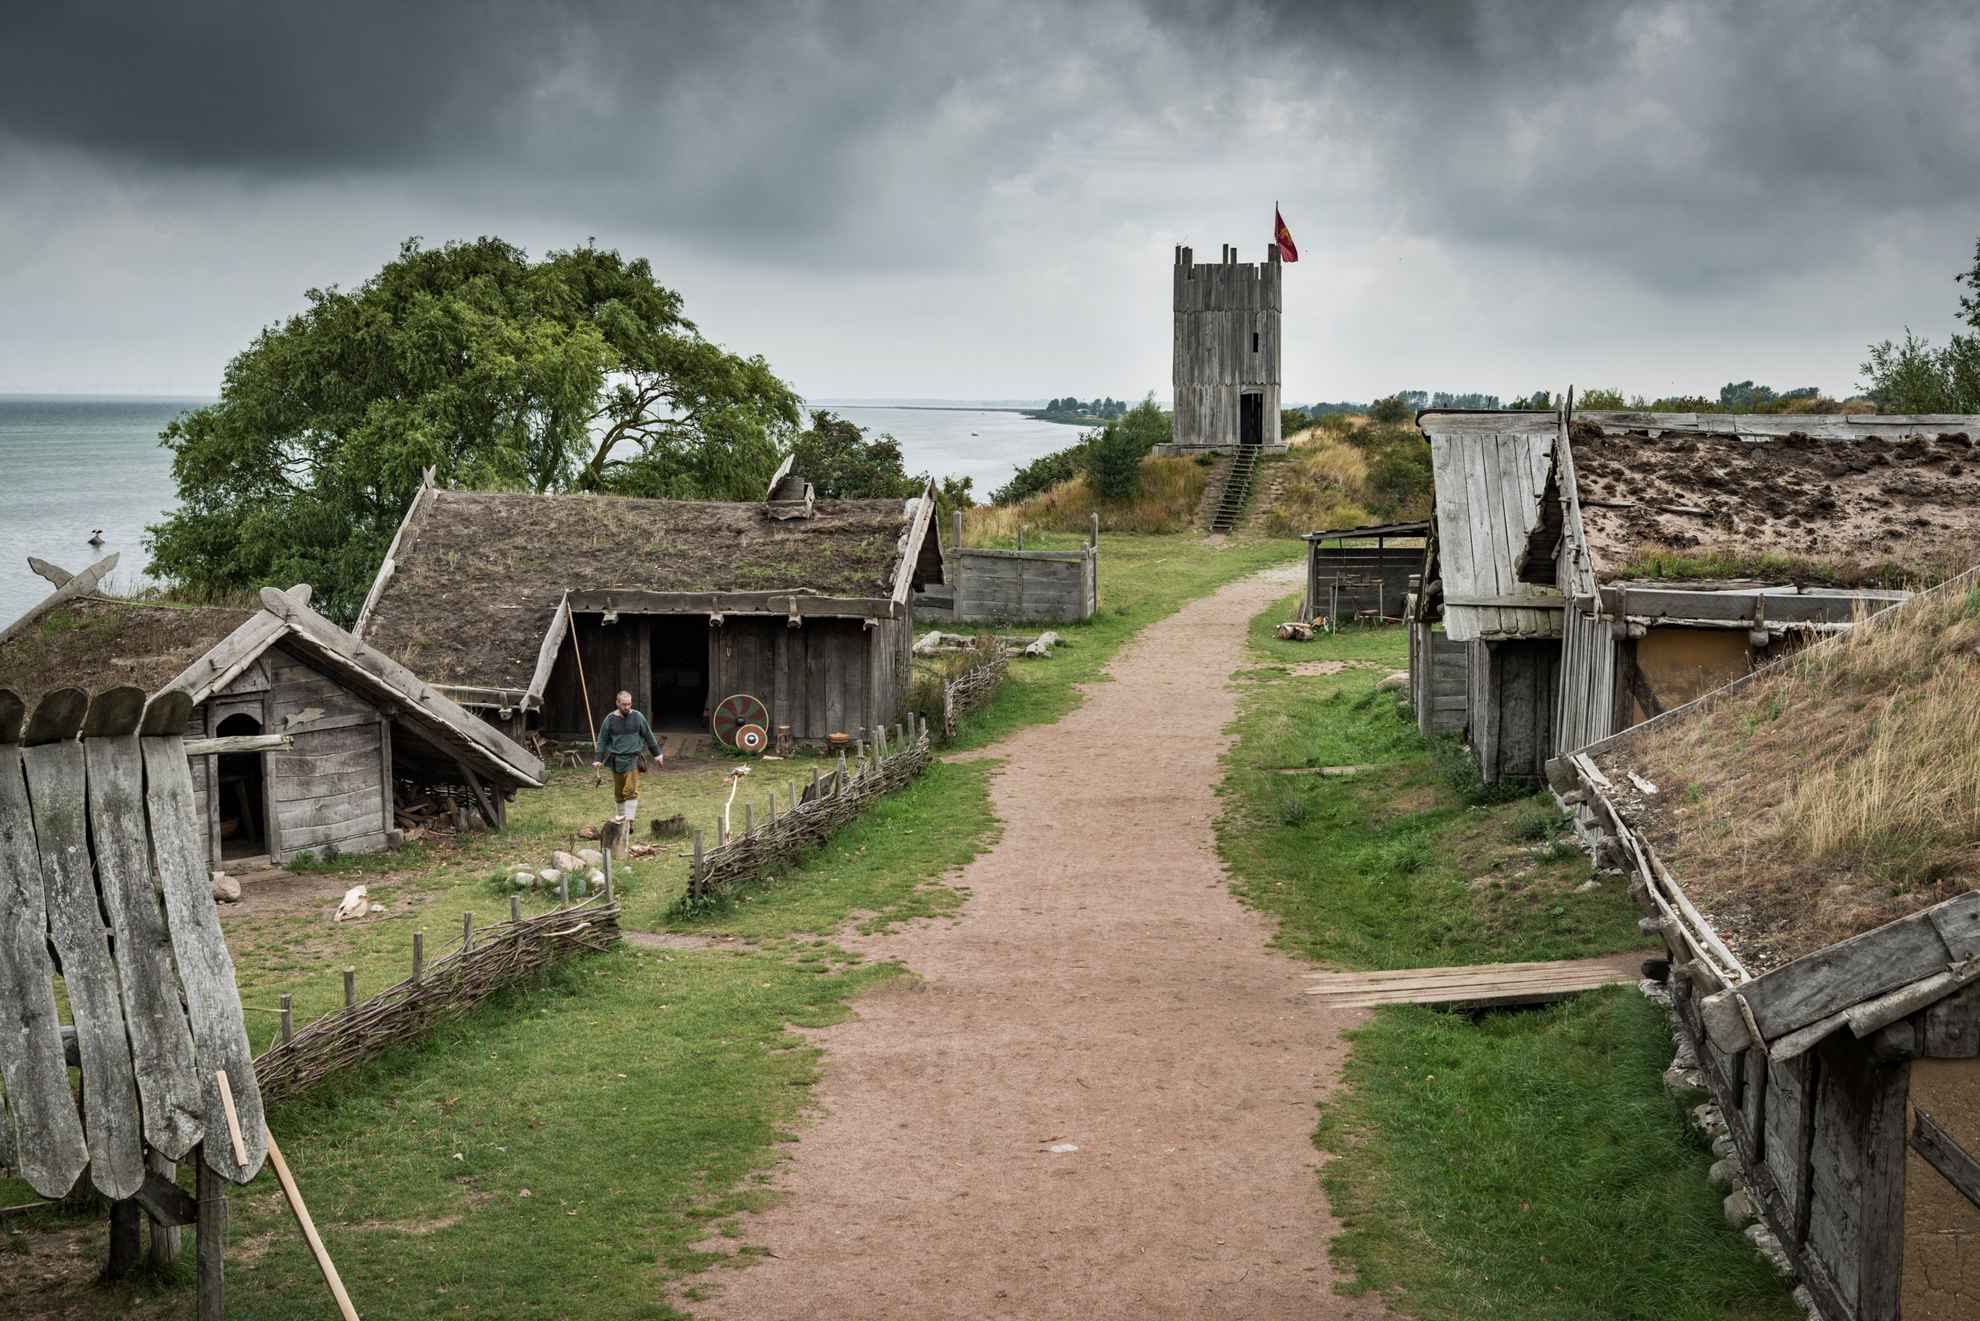 Een onverharde weg die door een traditioneel vikingdorp leidt met houten huizen met met gras bedekte daken.